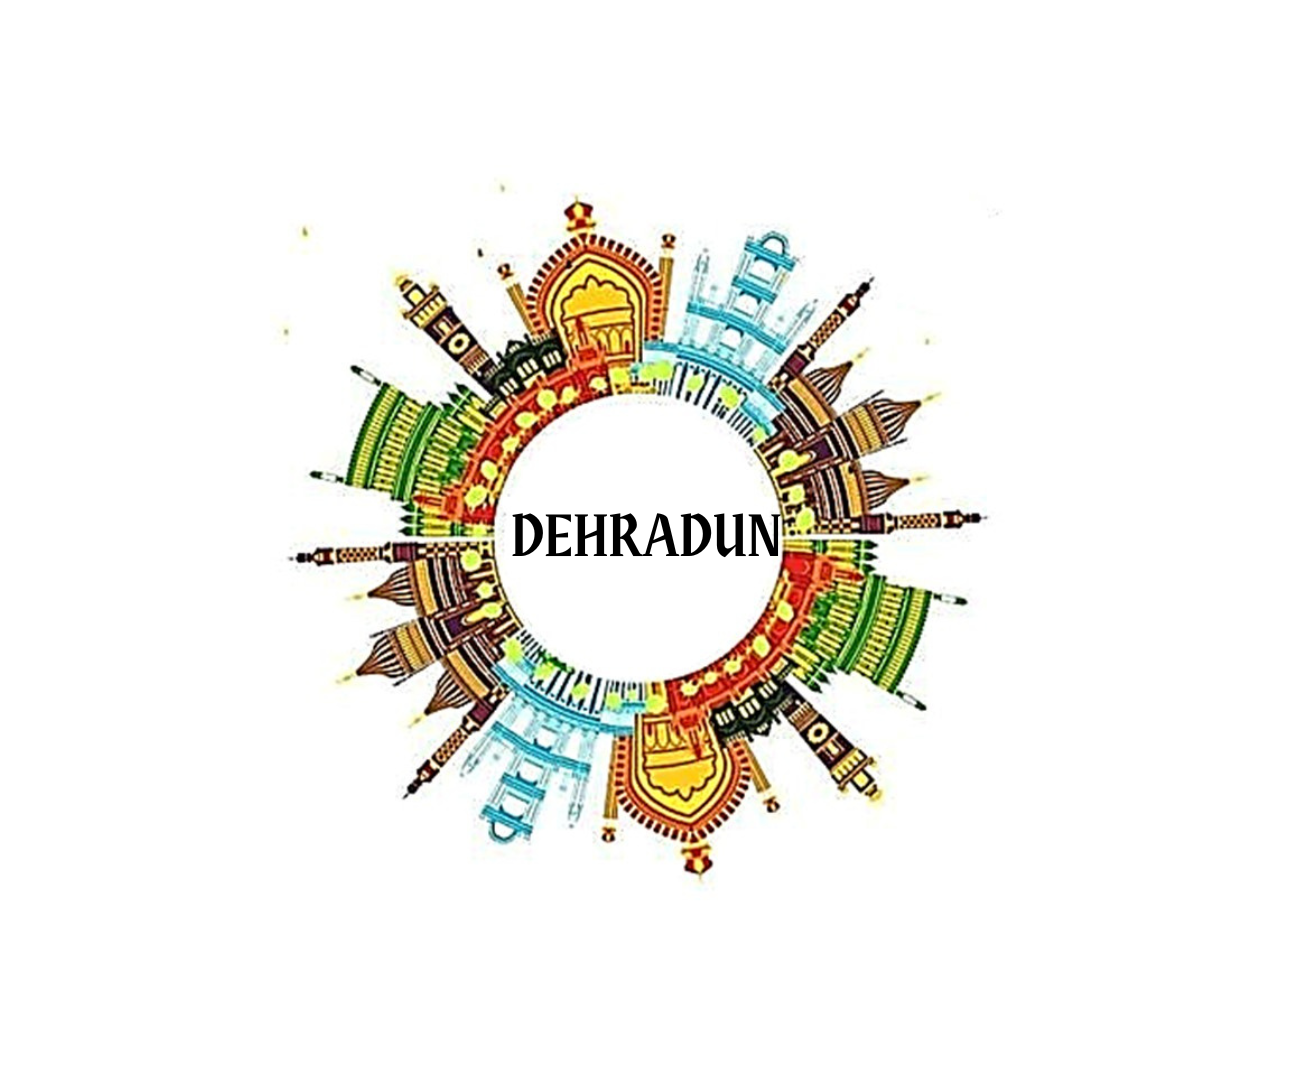 Dehradun